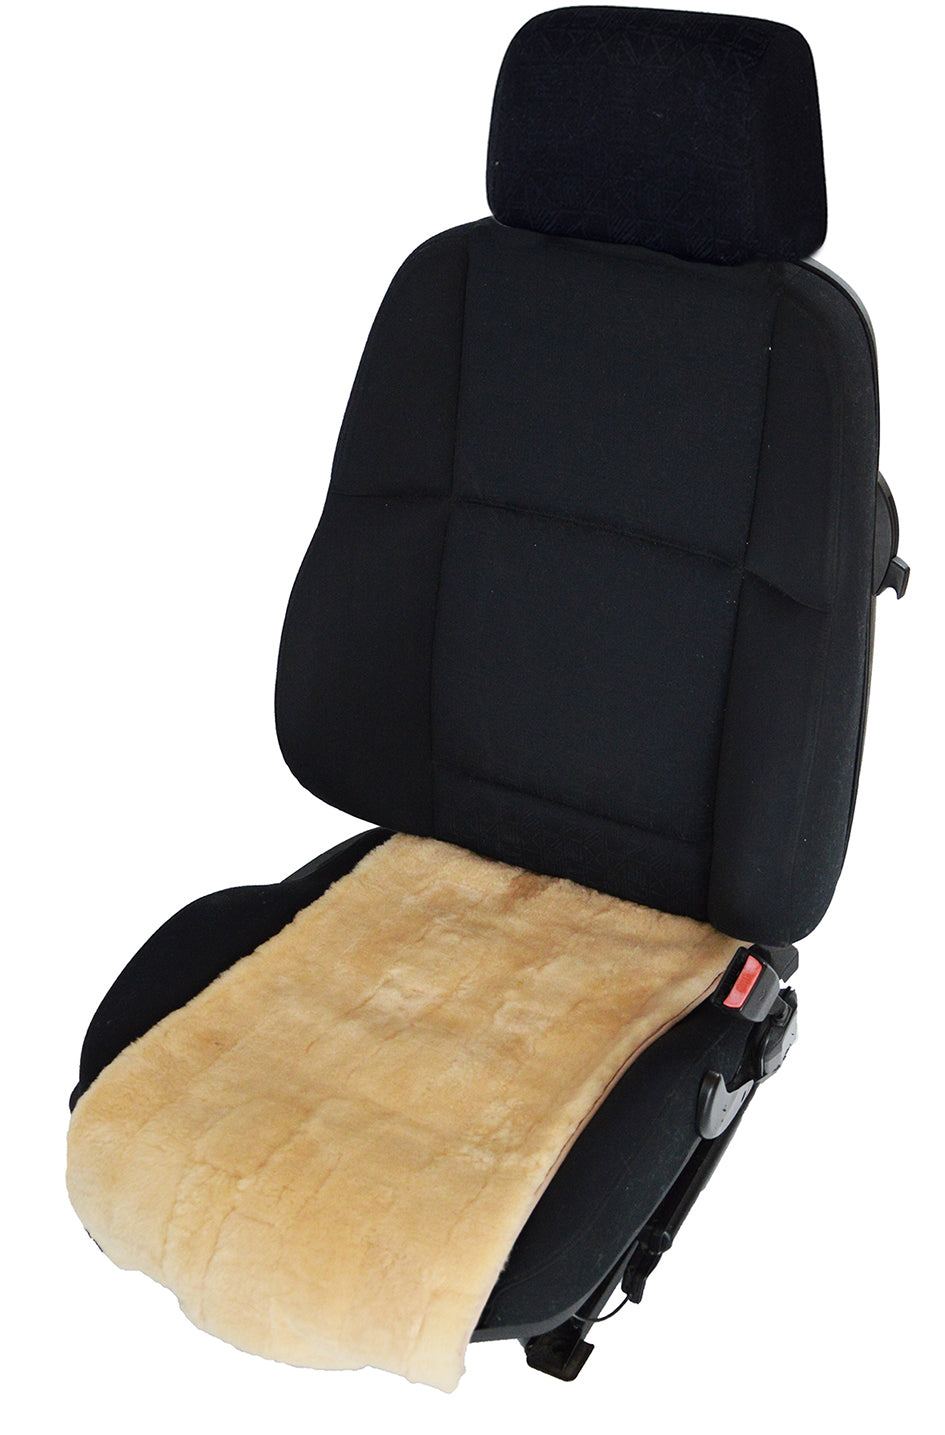 Sitzauflage - Sitzkissen - Lammfell - preiswerter Sitzbezug - Jetzt kaufen, Lammfelle für Auto, Bett und Wohnzimmer in höchster Qualität